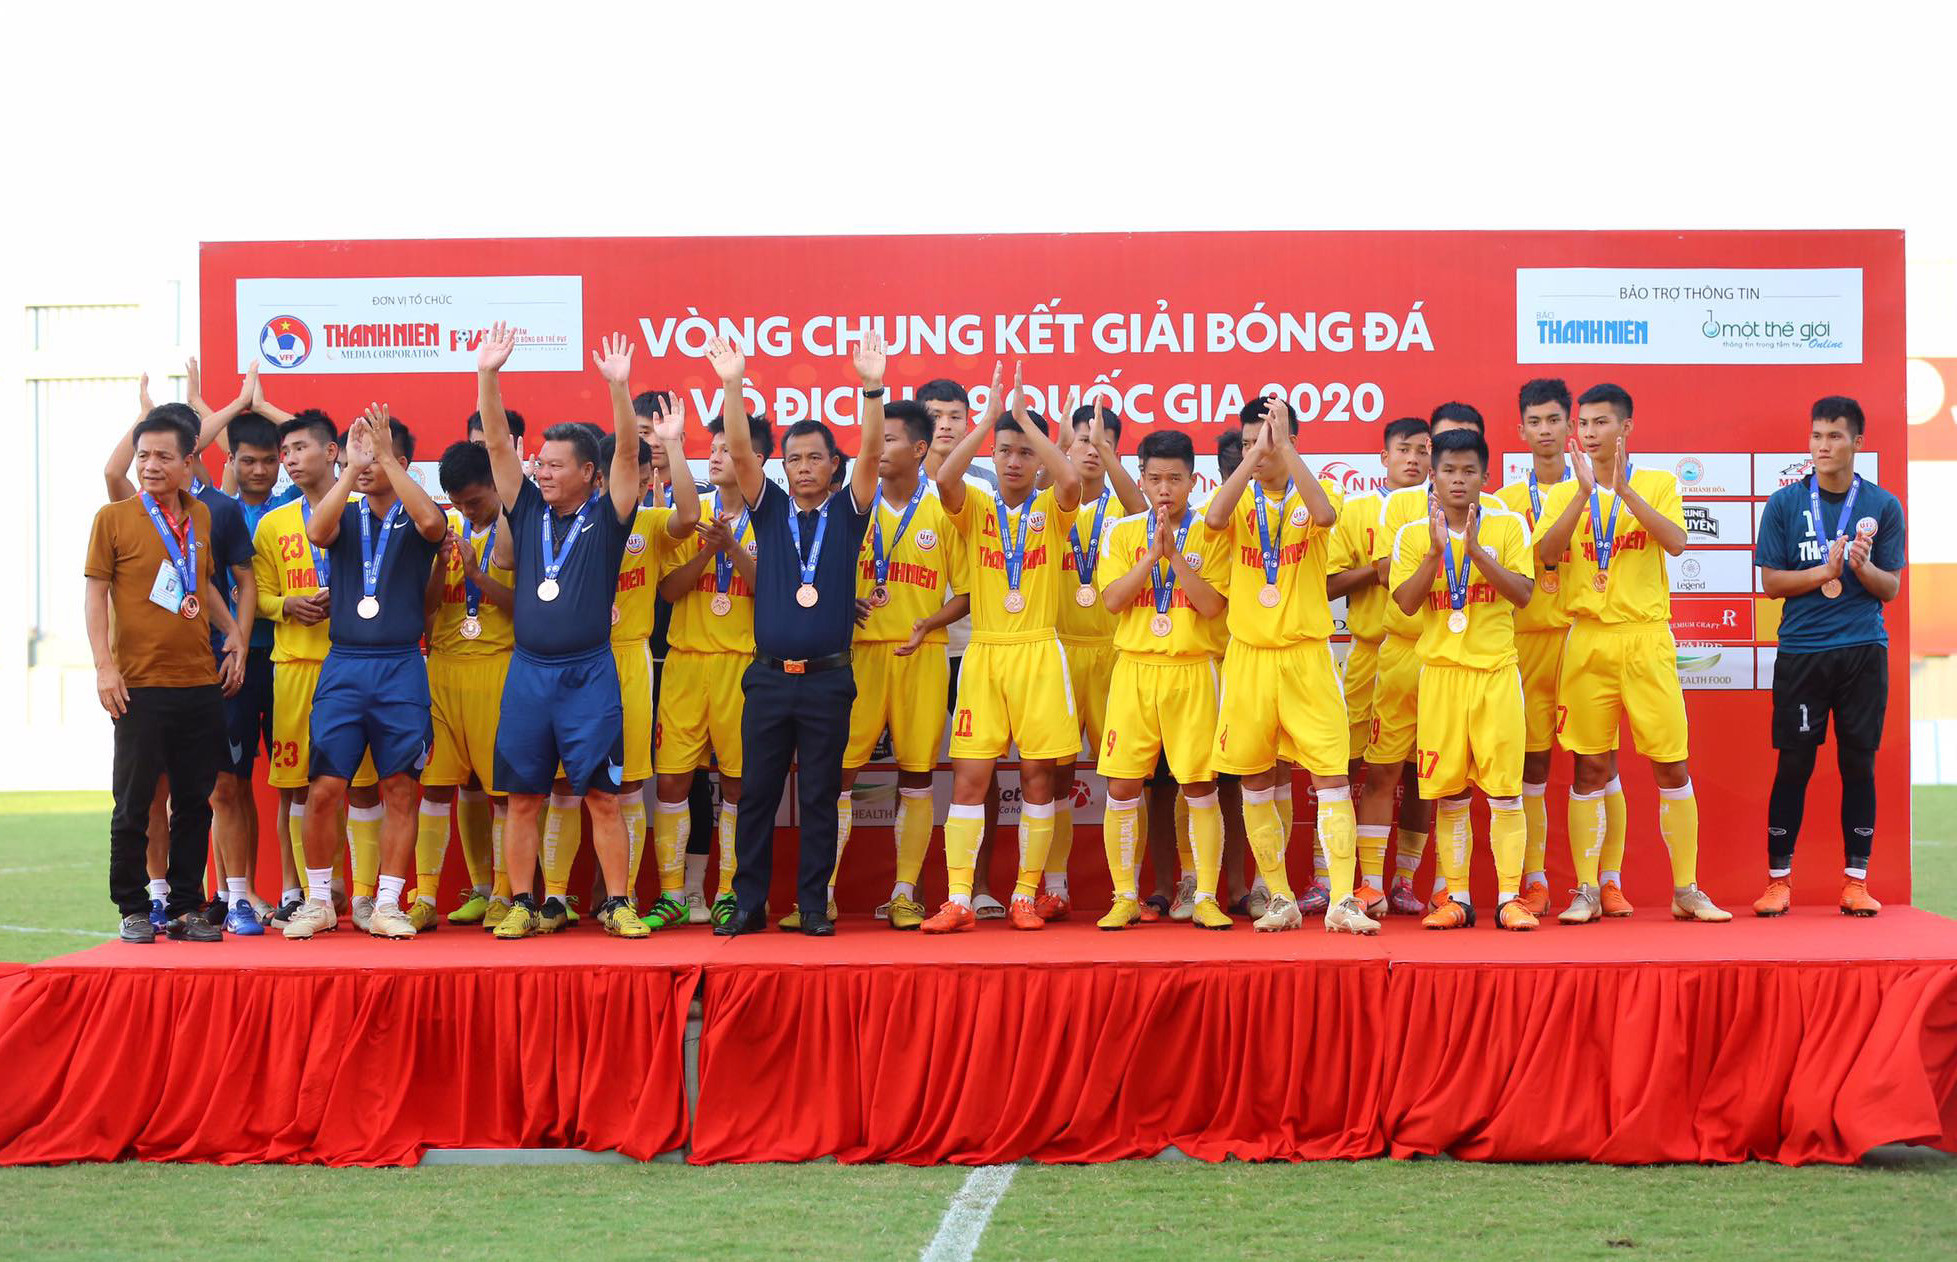 Sở hữu đến 8 tuyển thủ U19 Việt Nam trong đội hình nhưng U19 SLNA vẫn lỡ hẹn với trận chung kết. Ảnh: Hải Hoàng